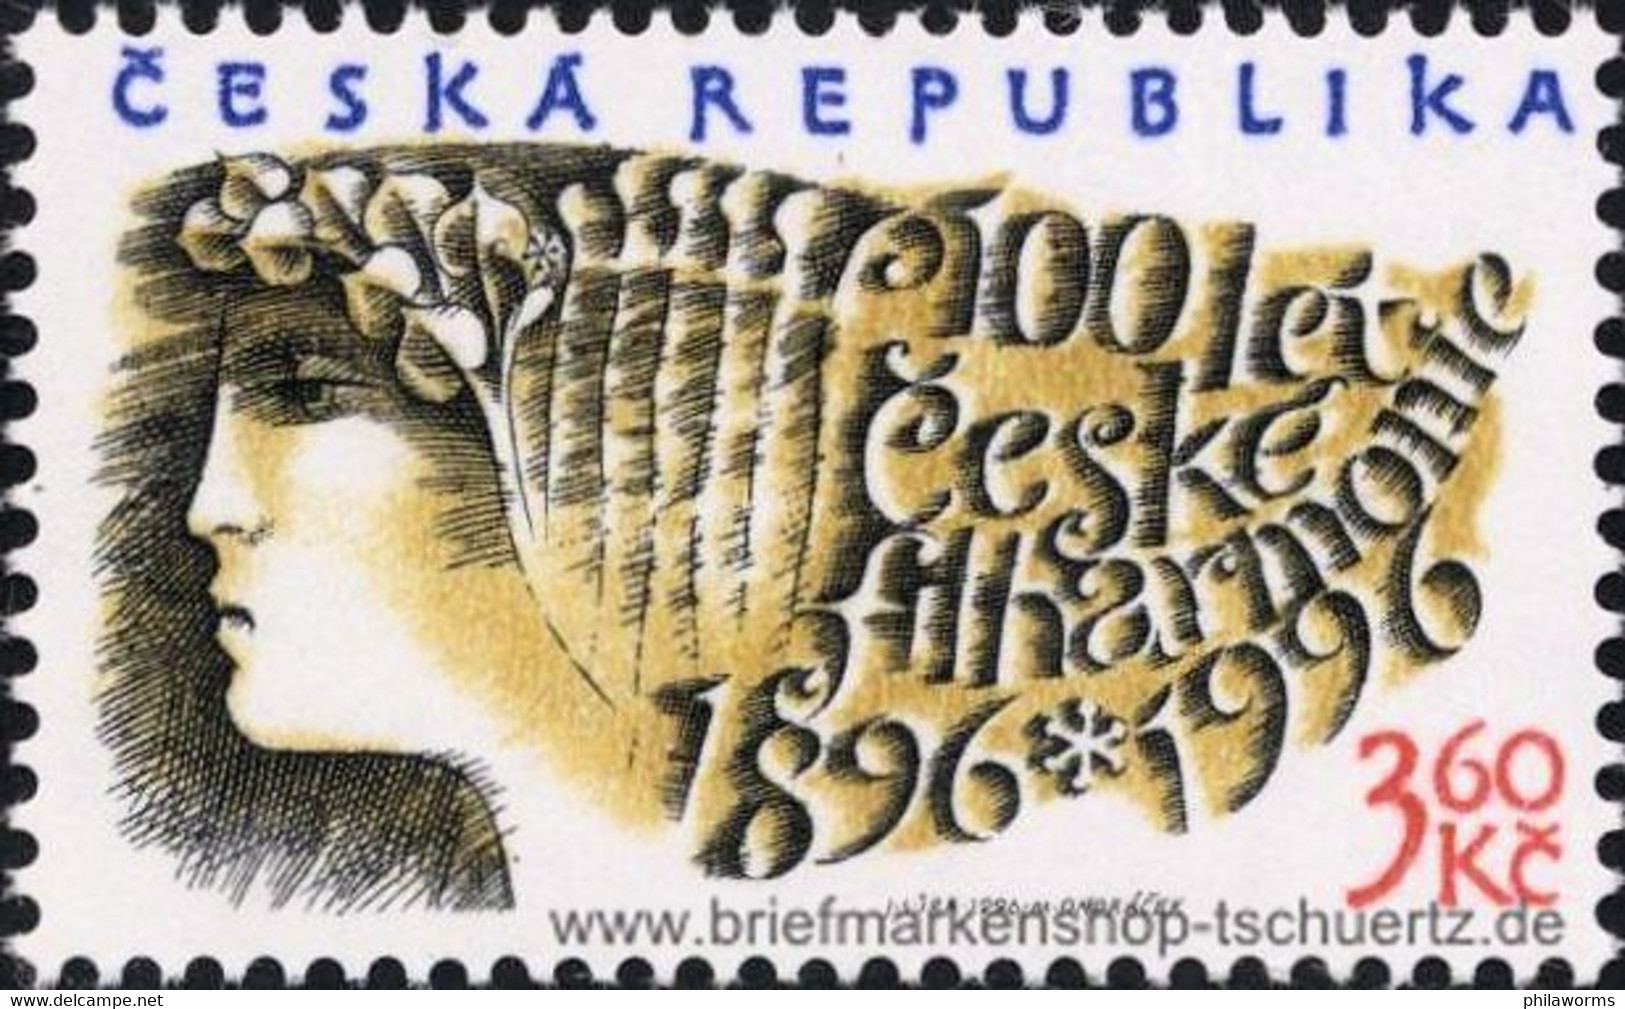 Tschechien 1996, Mi. 100 ** - Ungebraucht